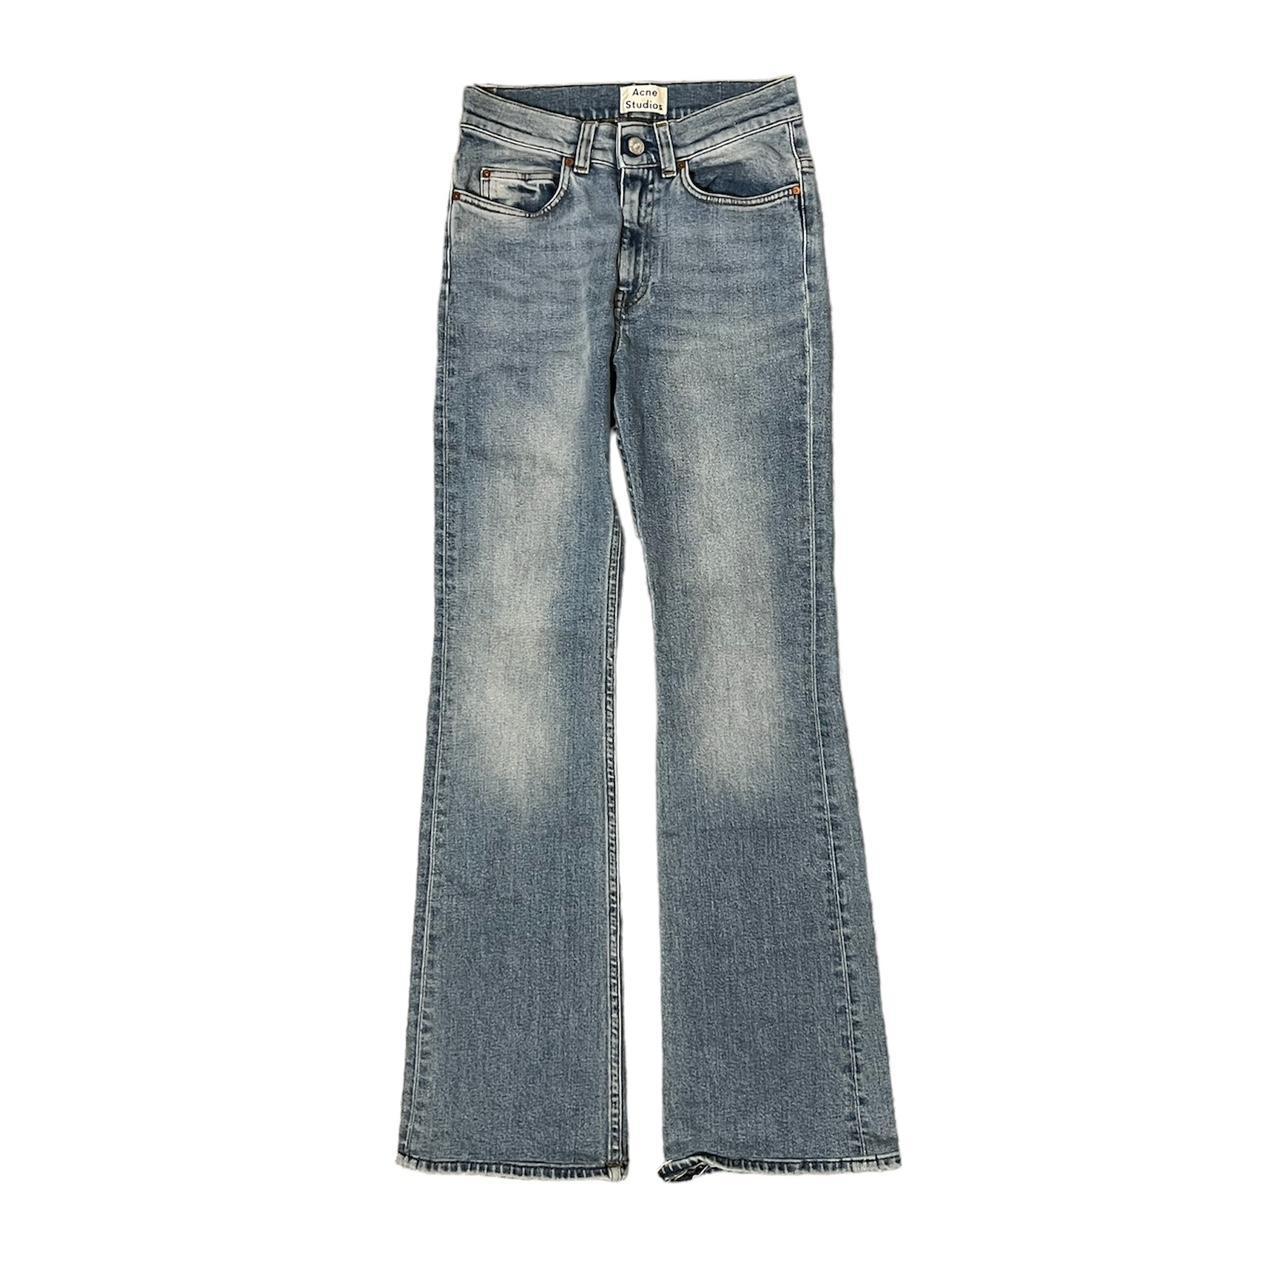 acne studios jeans measurements waist 24